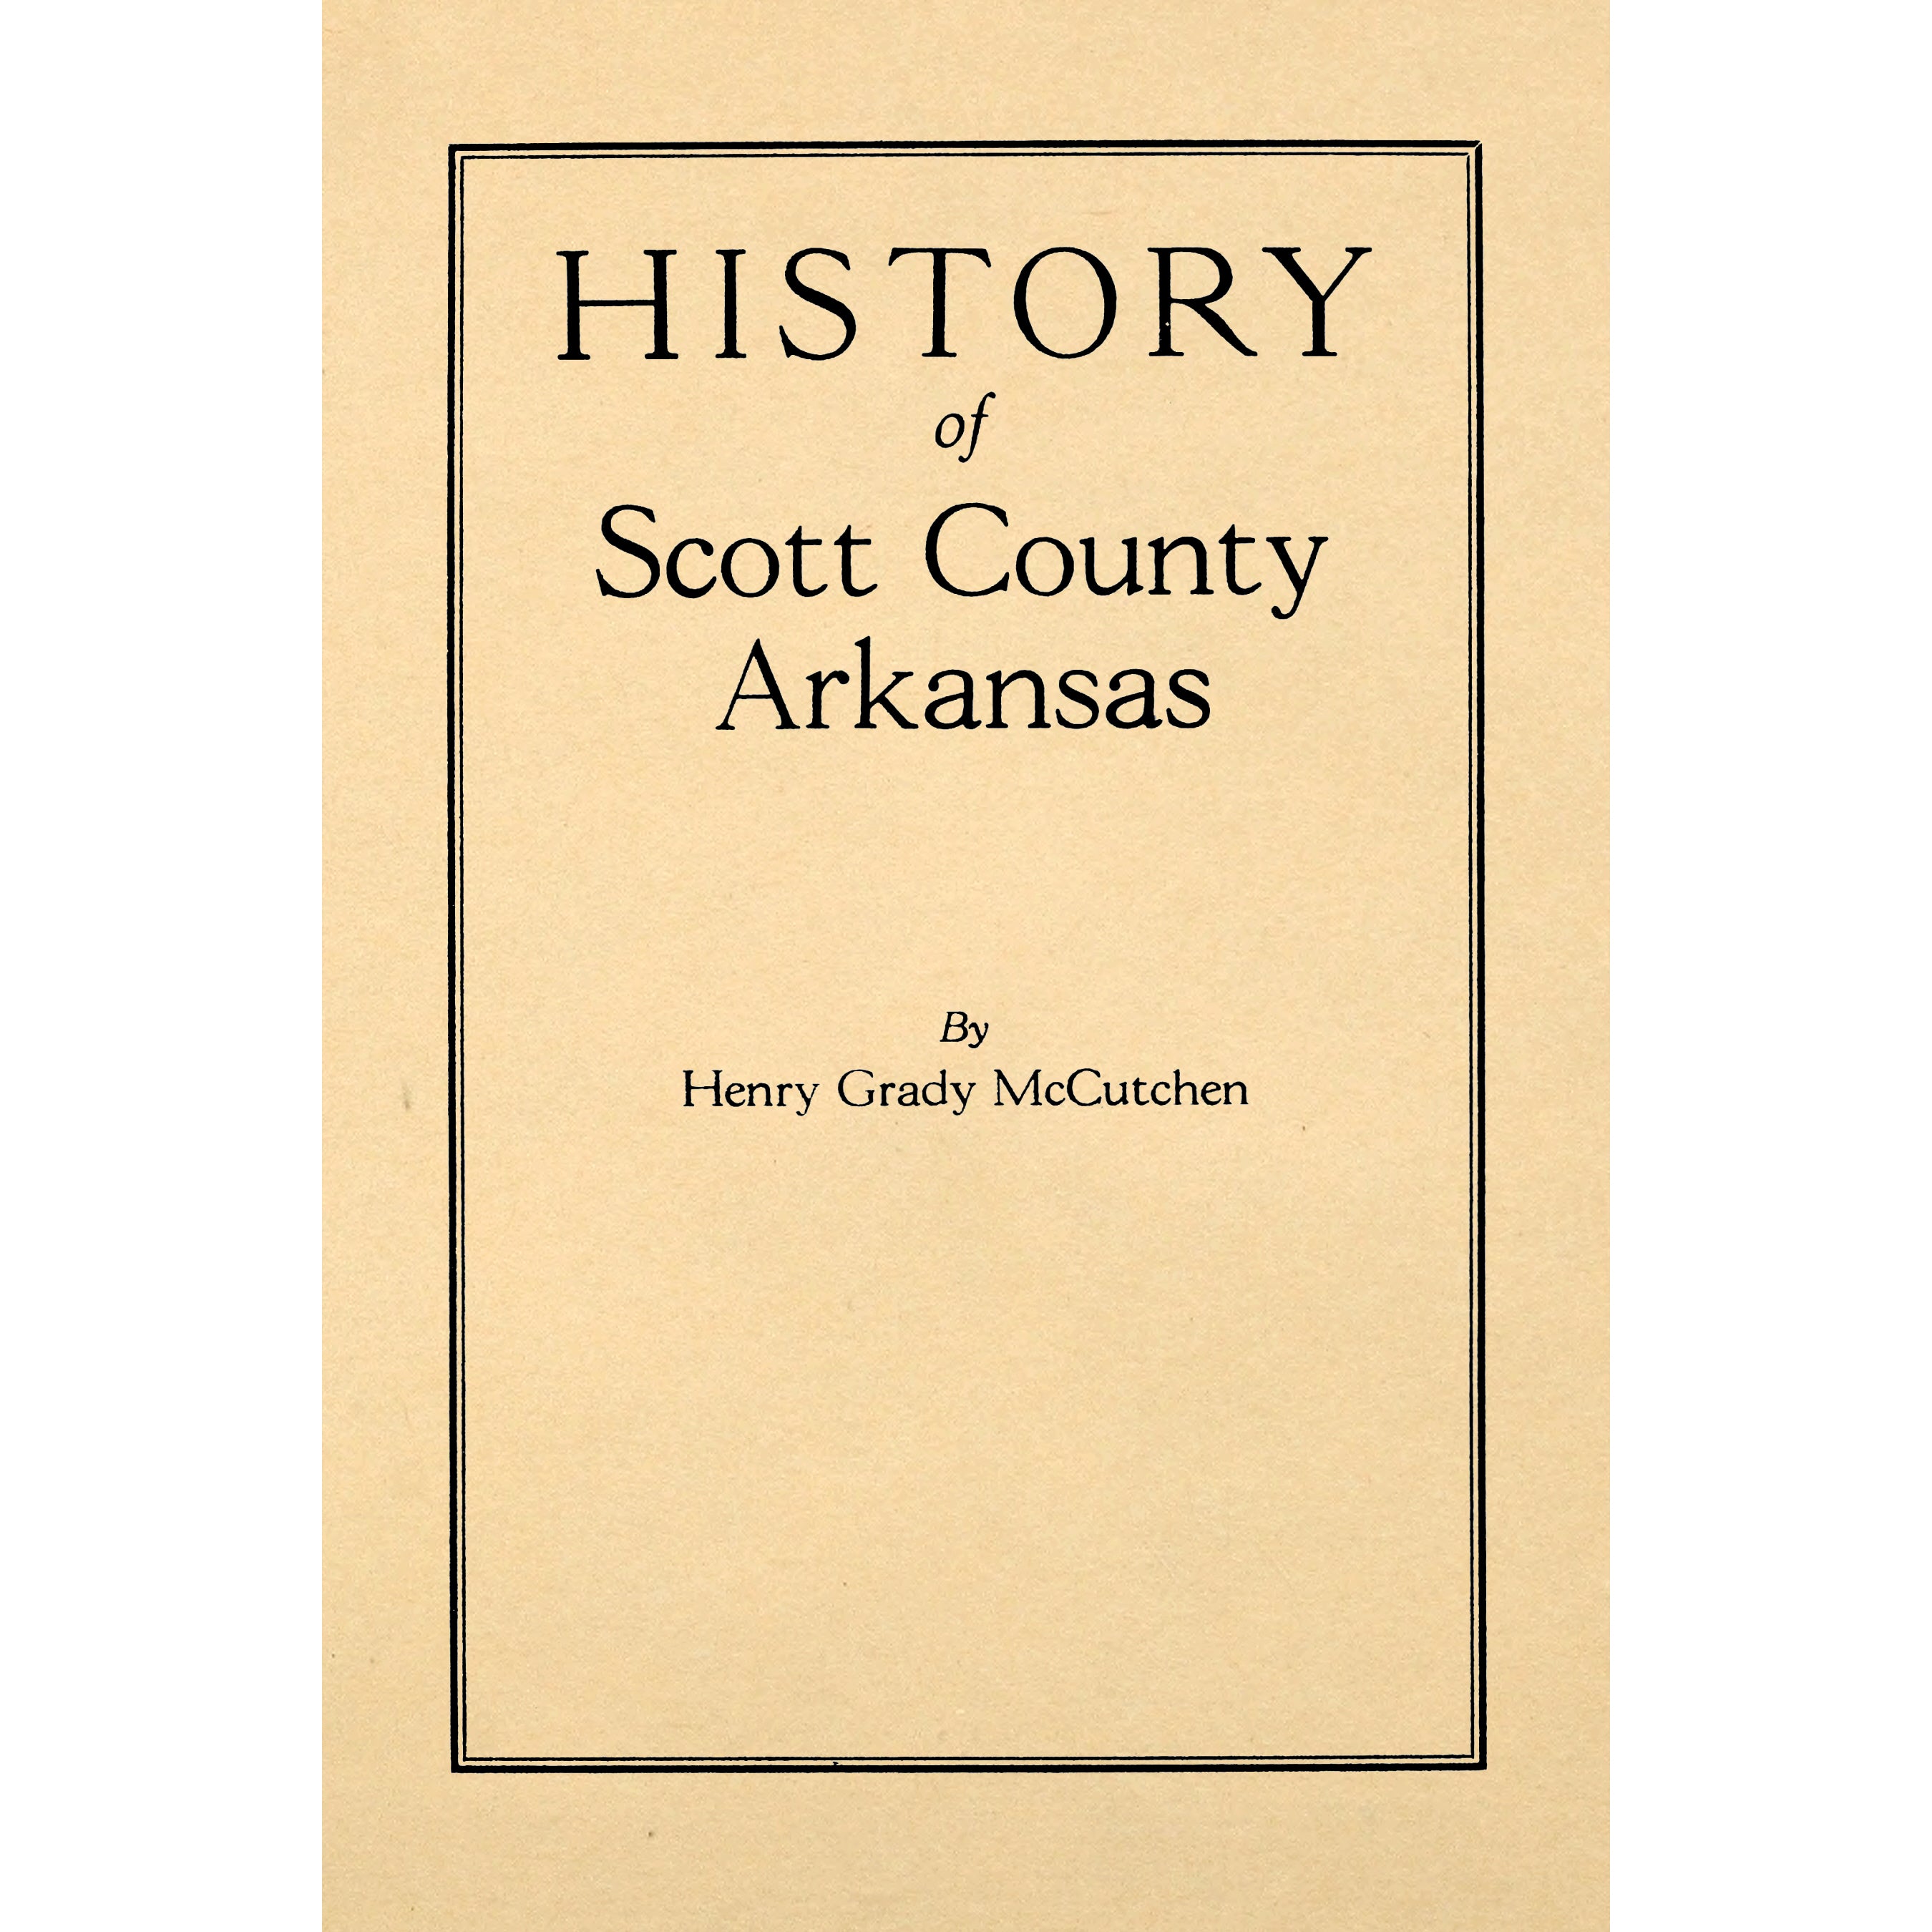 History of Scott County, Arkansas